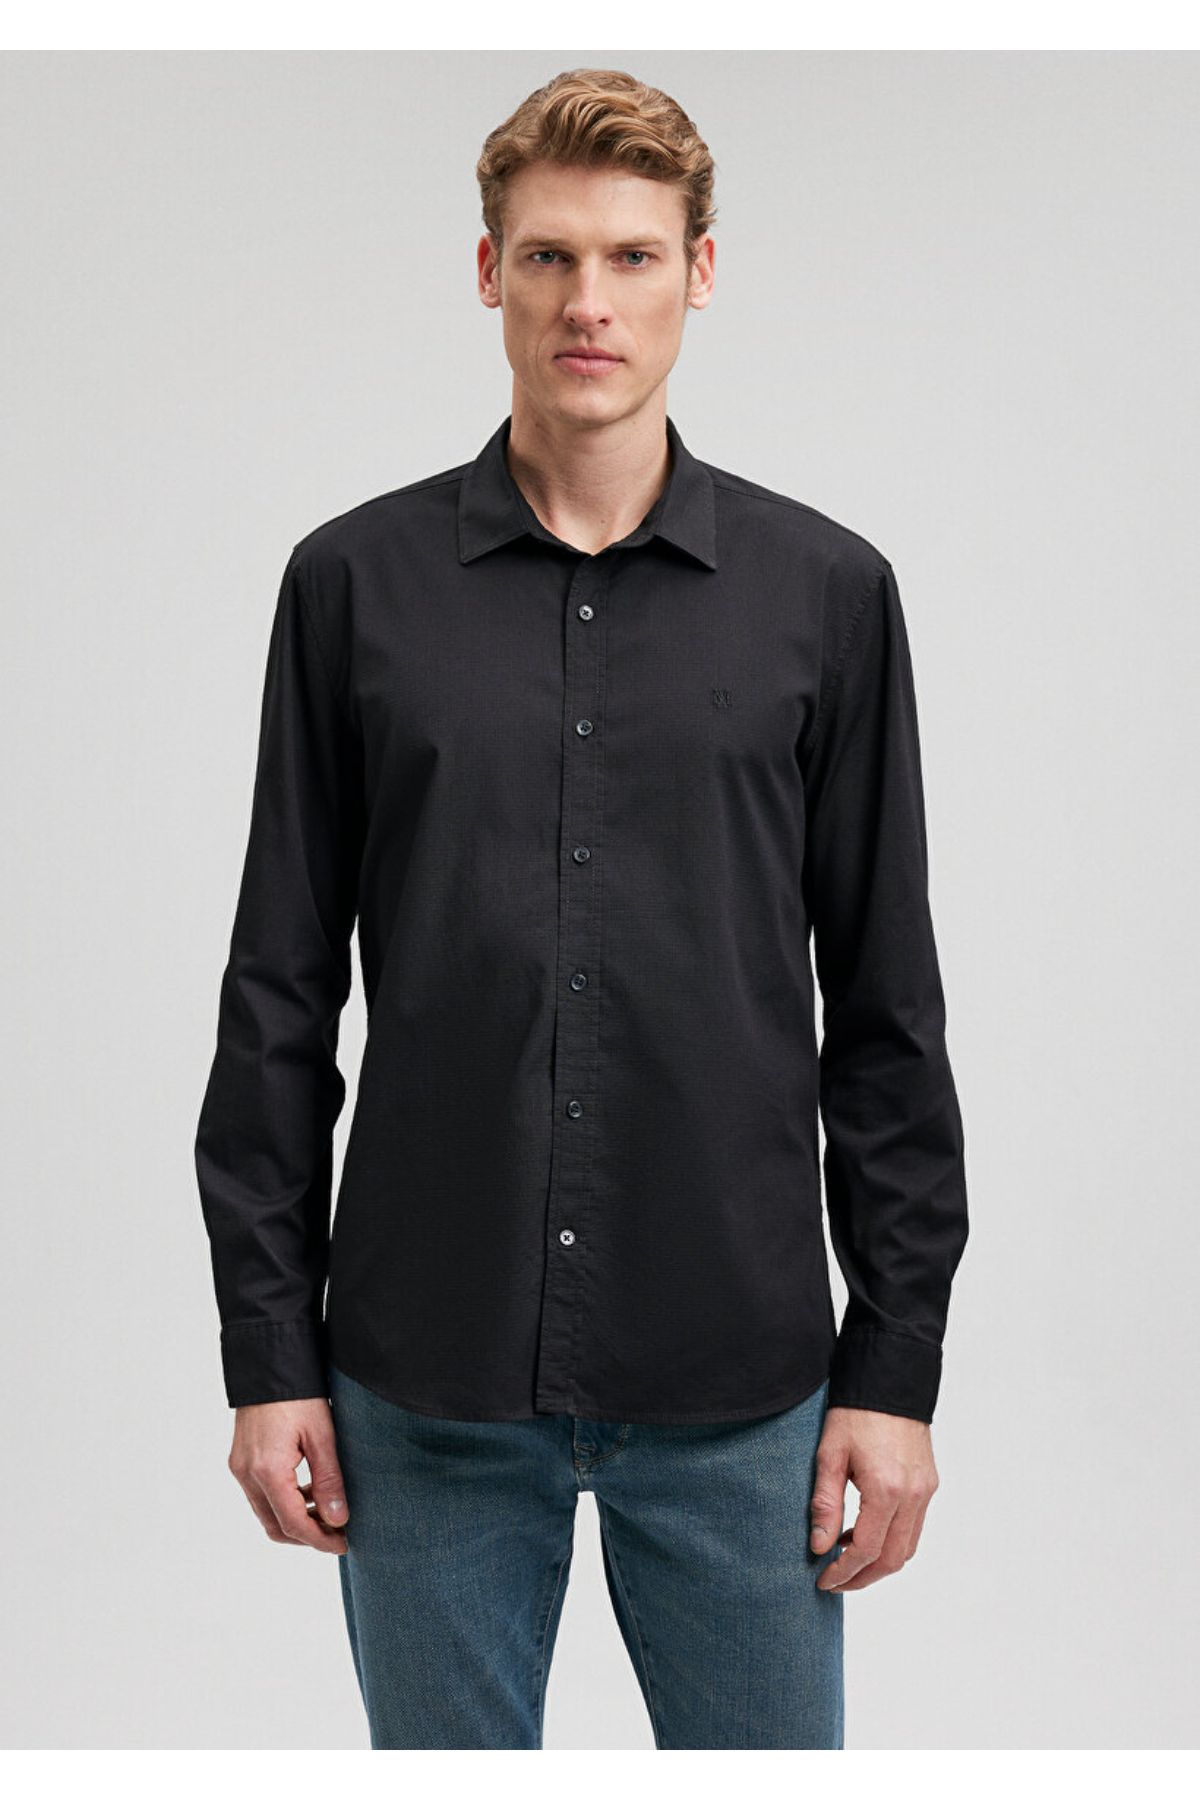 Mavi پیراهن سیاه مردانه M0211012-900